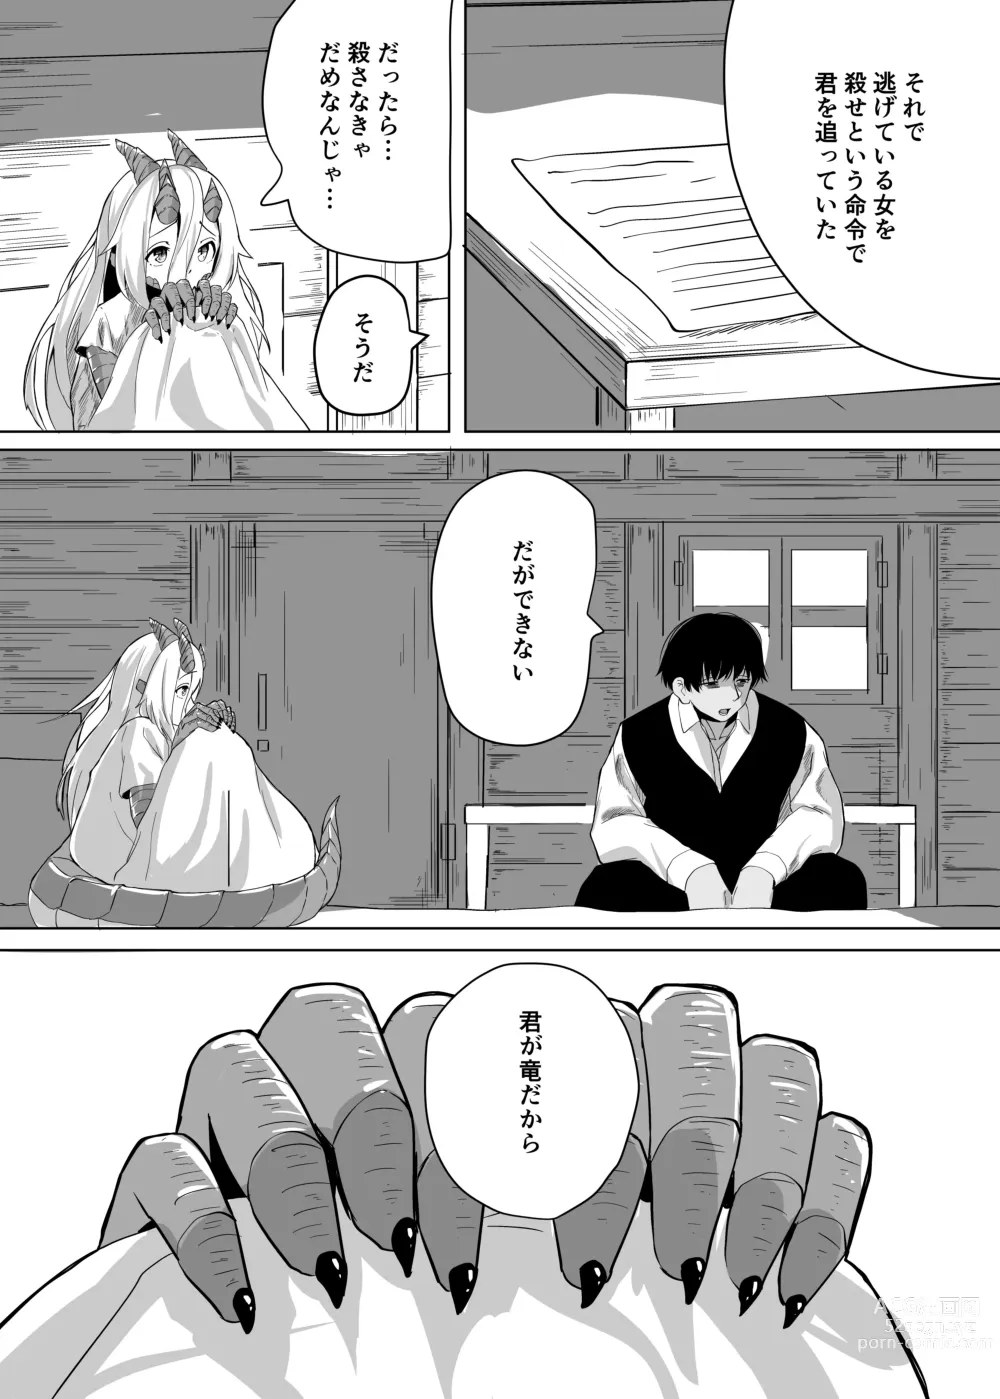 Page 13 of doujinshi Konna Sugata no Watashi demo Suki ni Natte kureru...? Hakugai Ryuujo to Genkai Koroshi-ya no Junai Kairaku Ochi